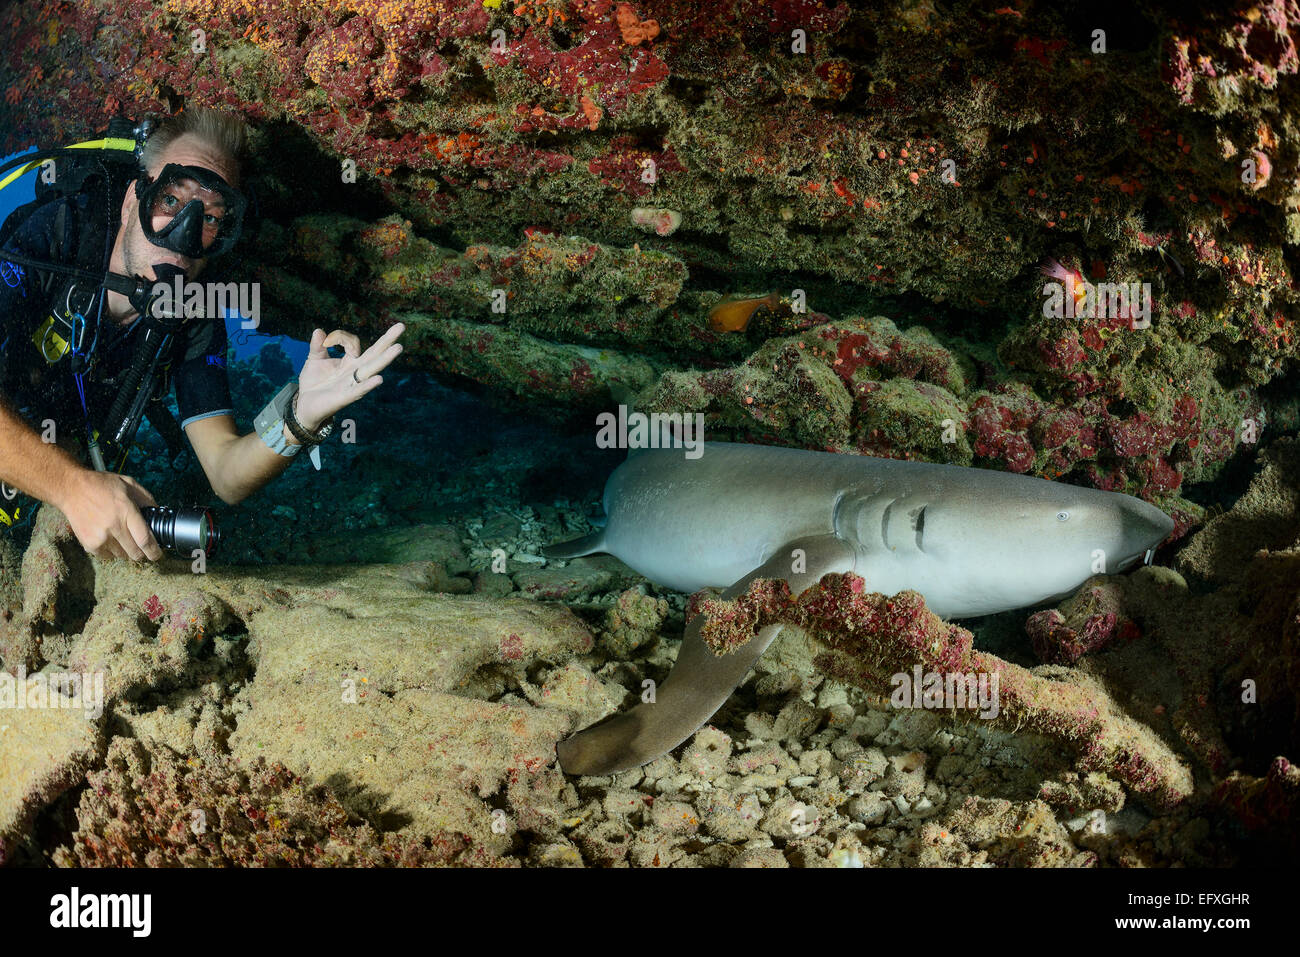 Nebrius ferrugineus, requin nourrice fauve et scuba diver, l'Atoll, Maldives, océan Indien Banque D'Images